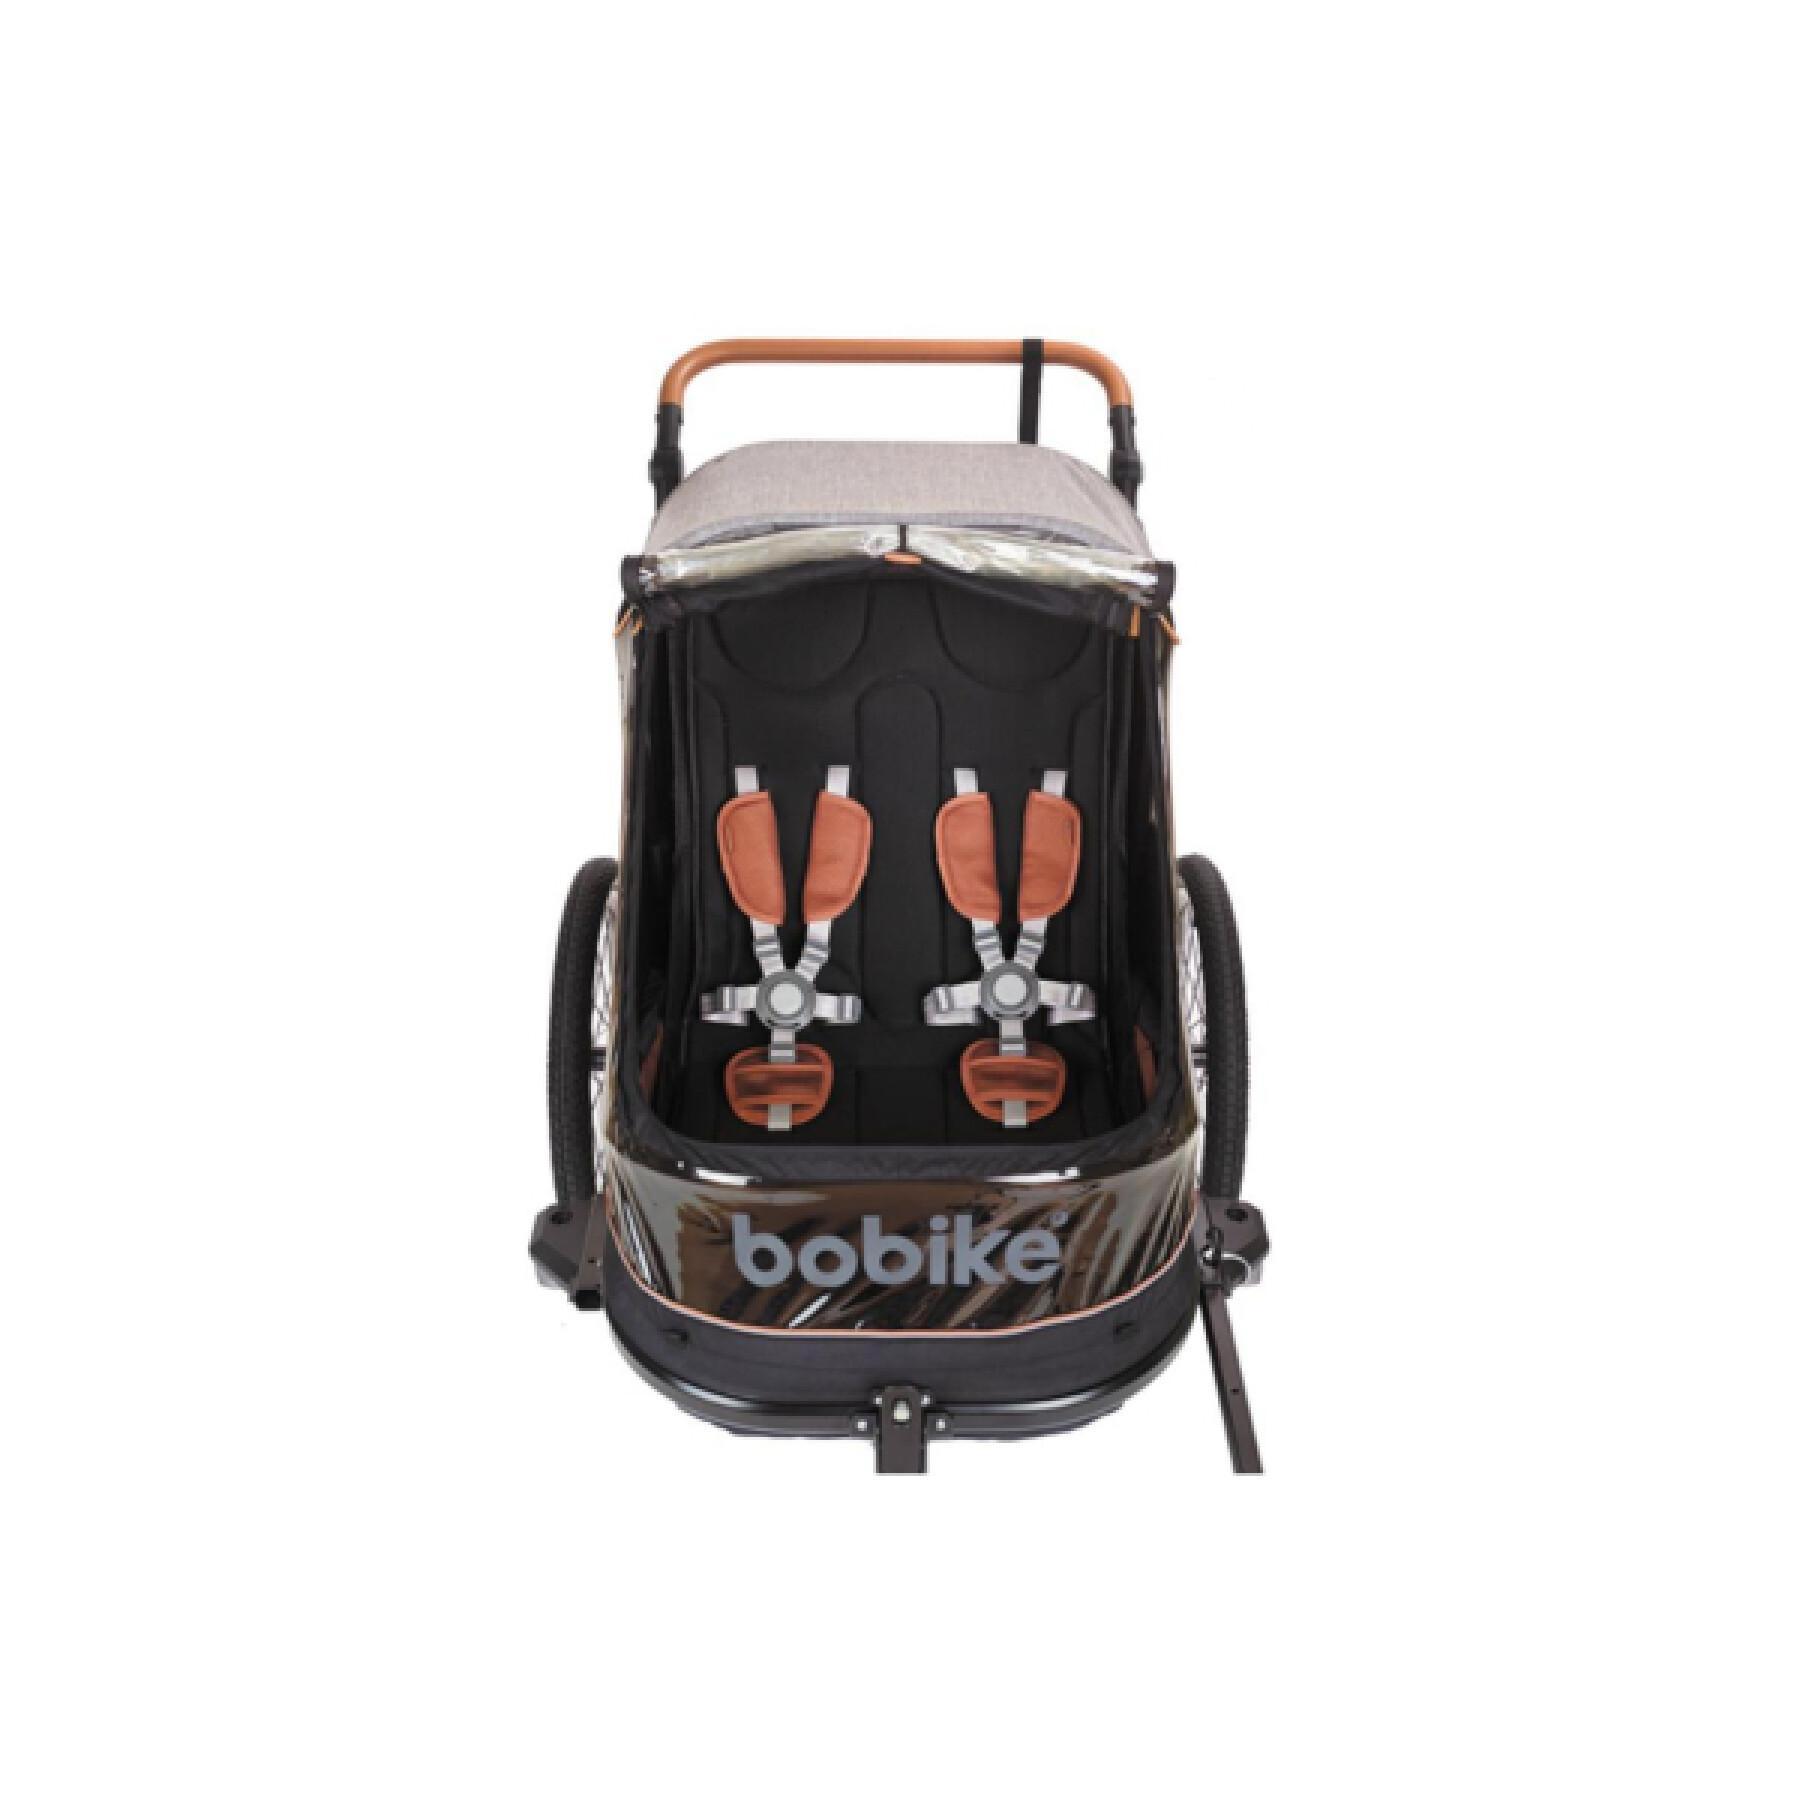 Net price trailer / stroller Bobike Moobe